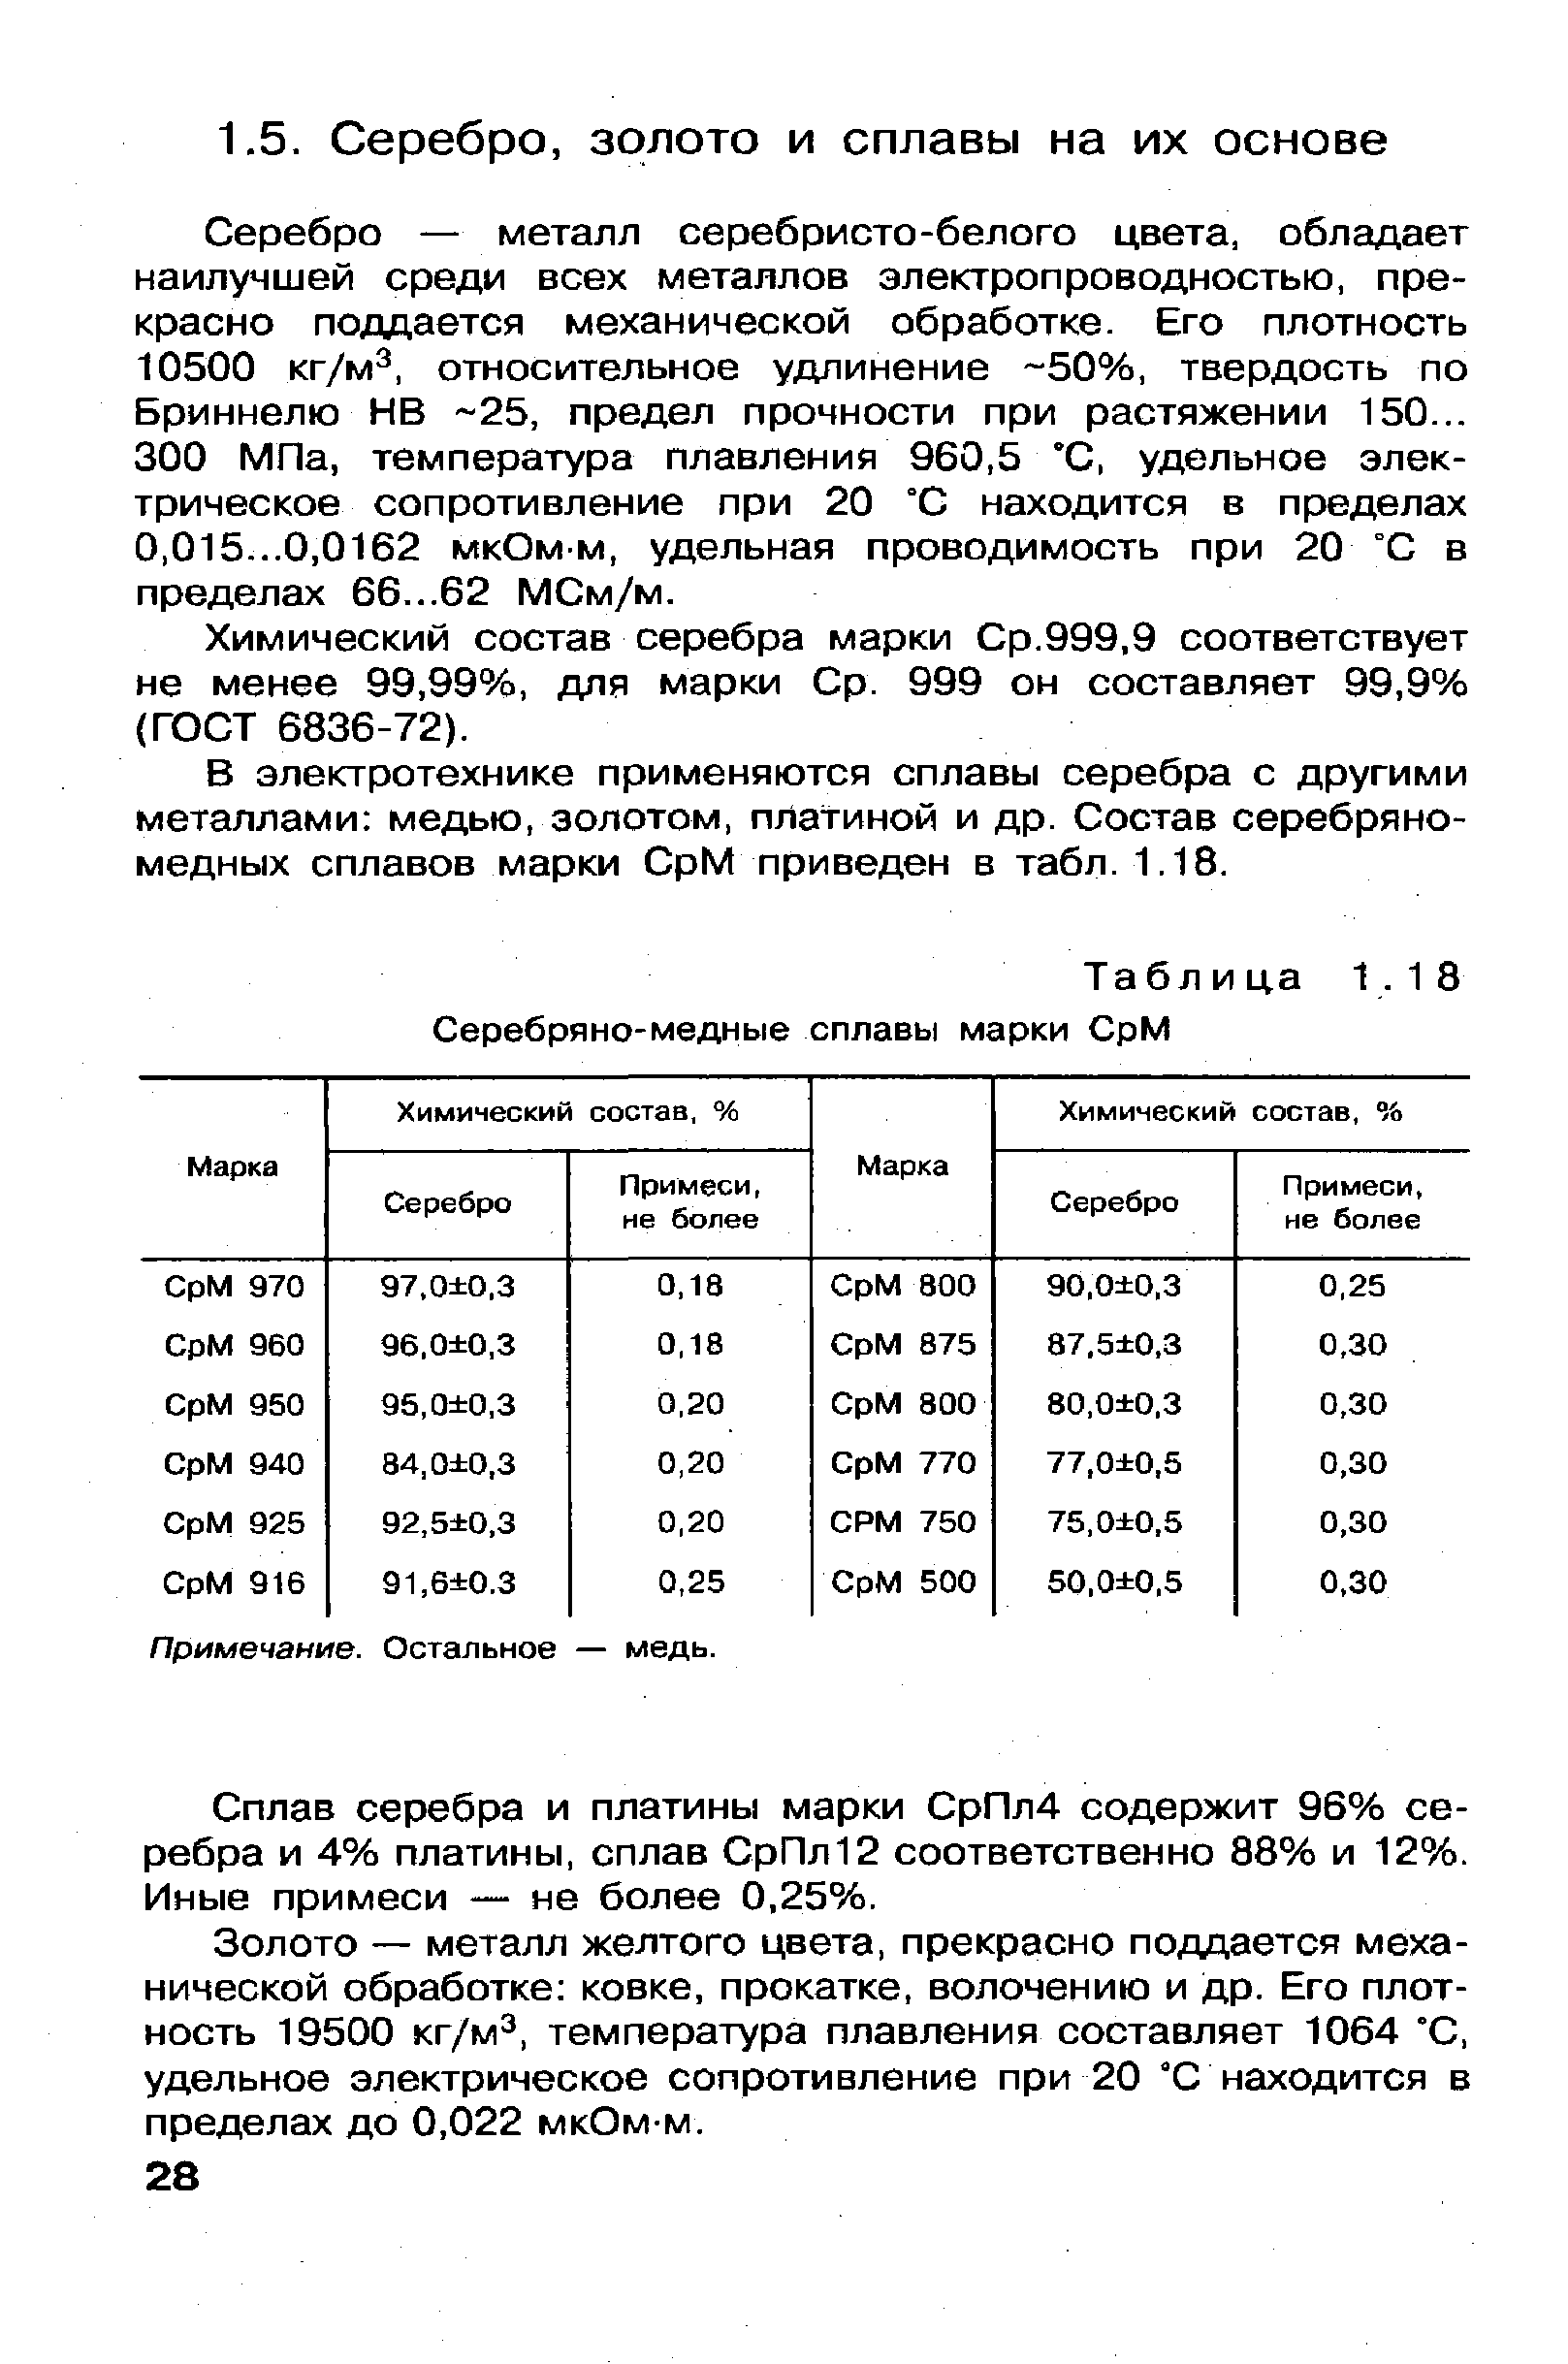 Таблица 1.18 Серебряно-медные сплавы марки СрМ
